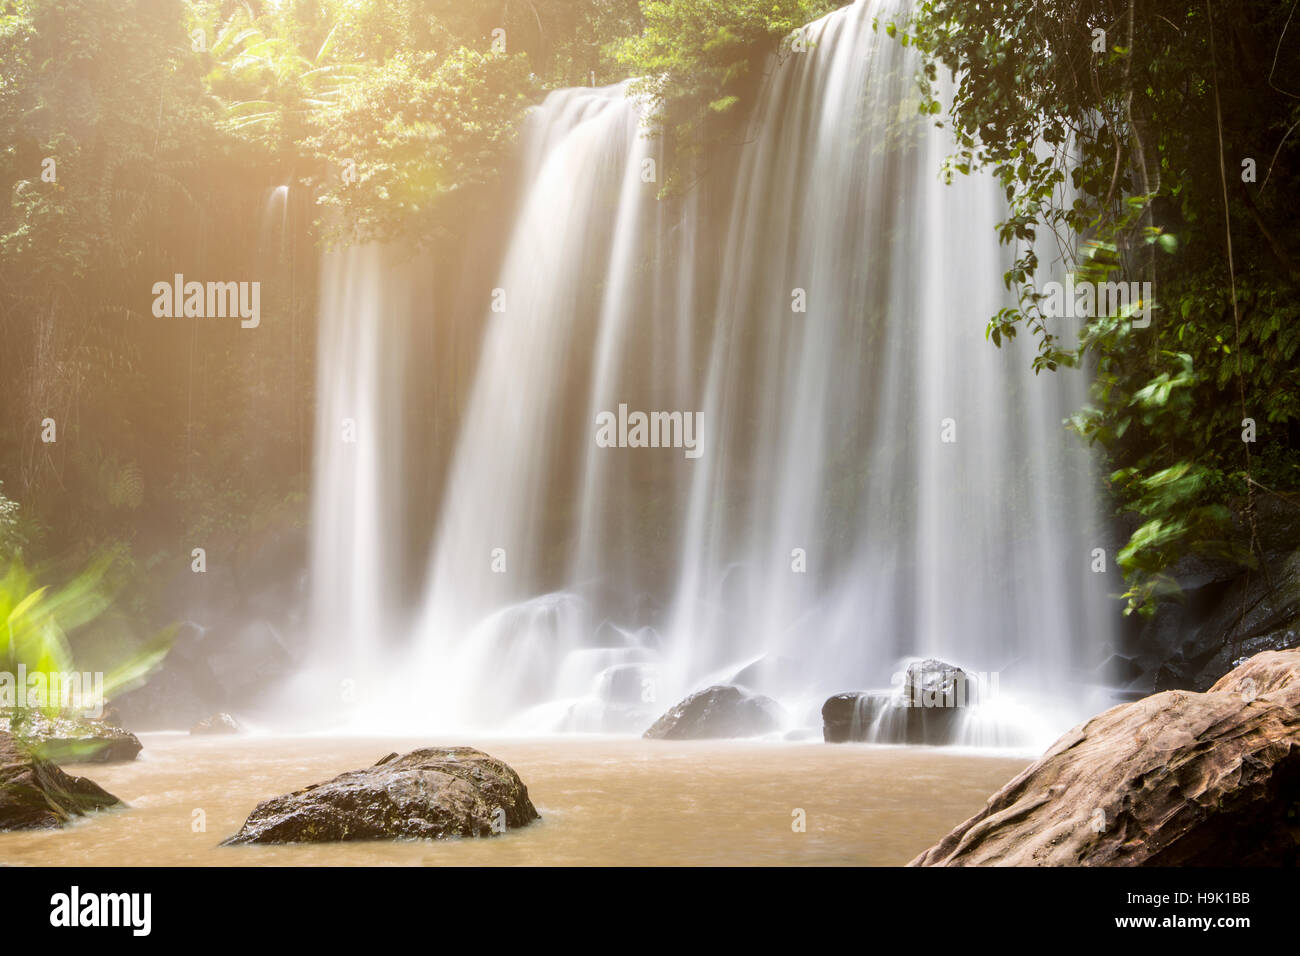 Cambodia, Nationalpark Phnom Kulen, view to waterfalls Stock Photo